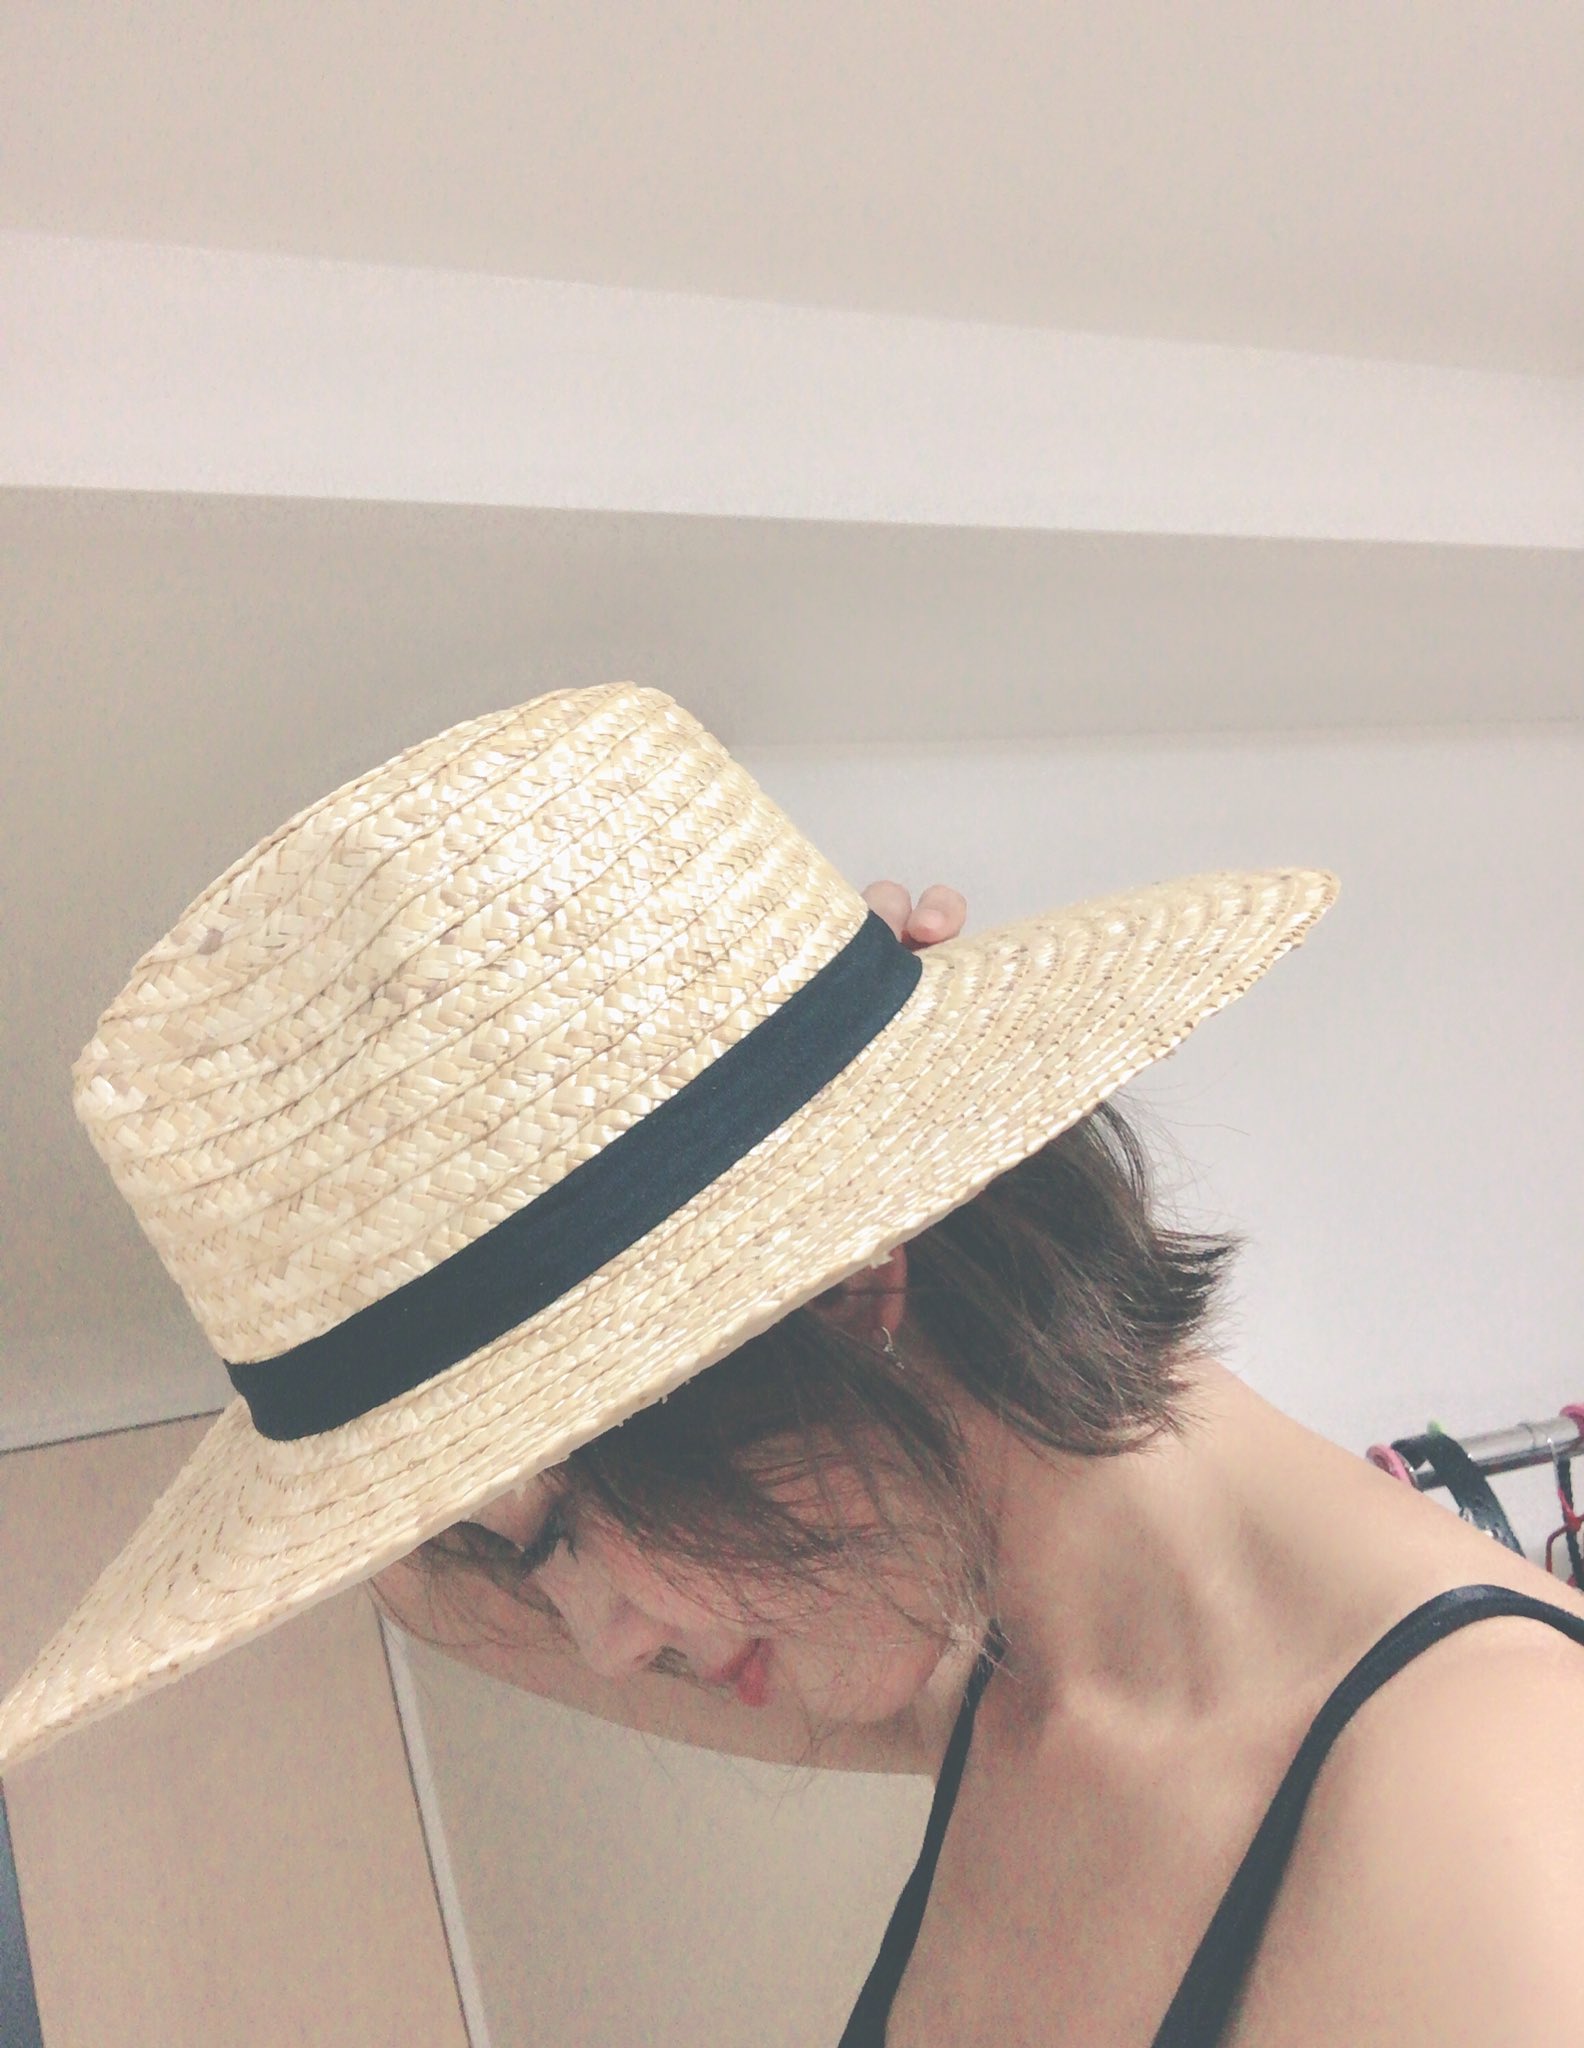 きしあき on Twitter: "こんばんは☆ 今日ネットで購入した麦わら帽子が届きました👒 ツバが長くて可愛い💕 今週末使えるかしら😚